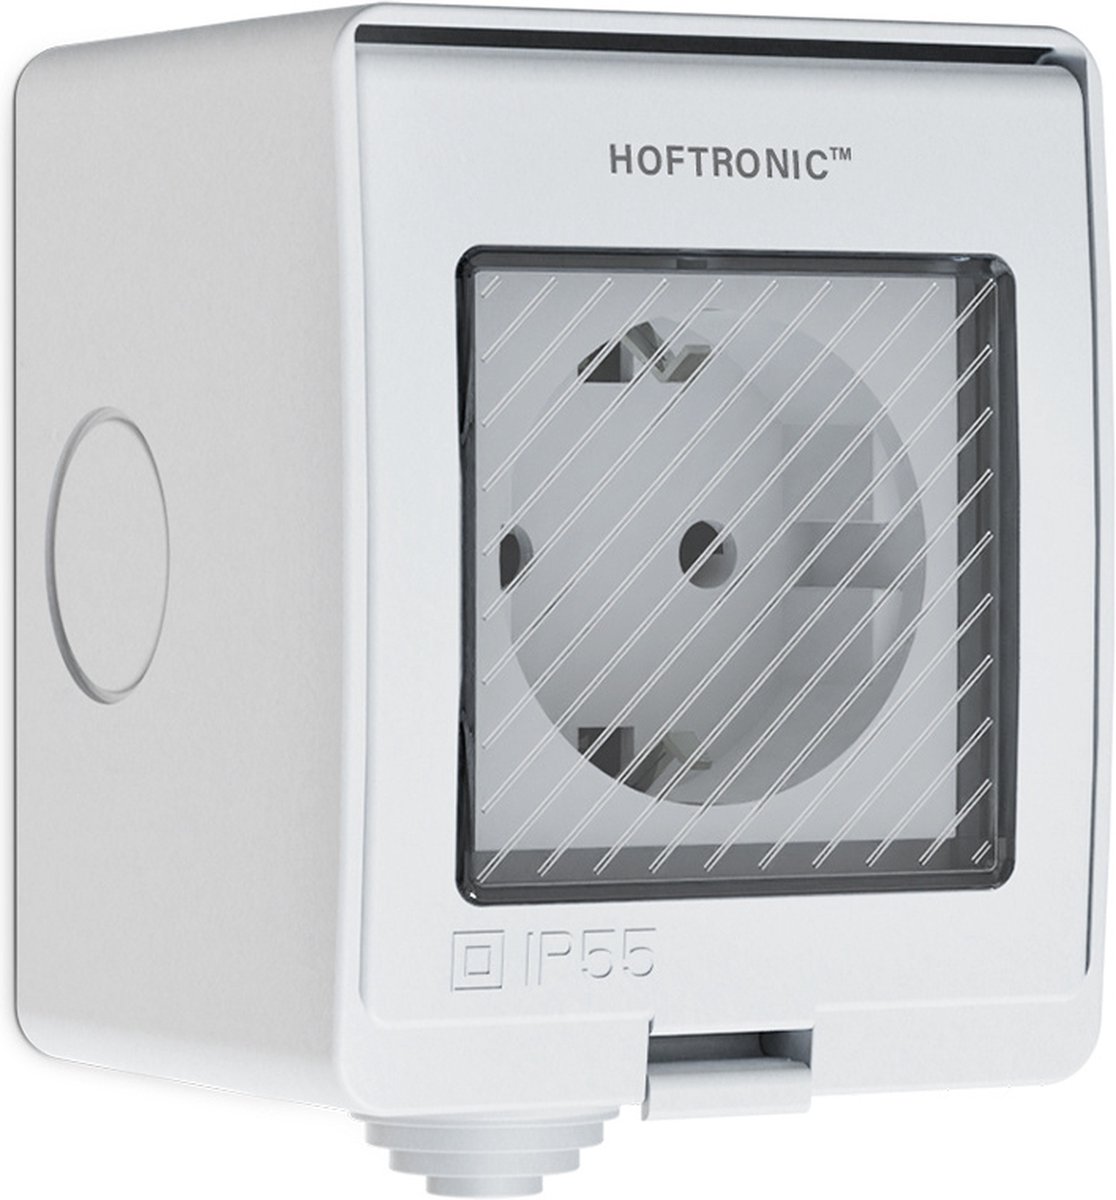 HOFTRONIC - Slimme Stekker buiten - IP55 Waterdicht voor binnen en buiten - Slim buitenstopcontact - WiFi + Bluetooth 16A - Bediening via App - Compatibel met alle smart assistenten - Smart Home